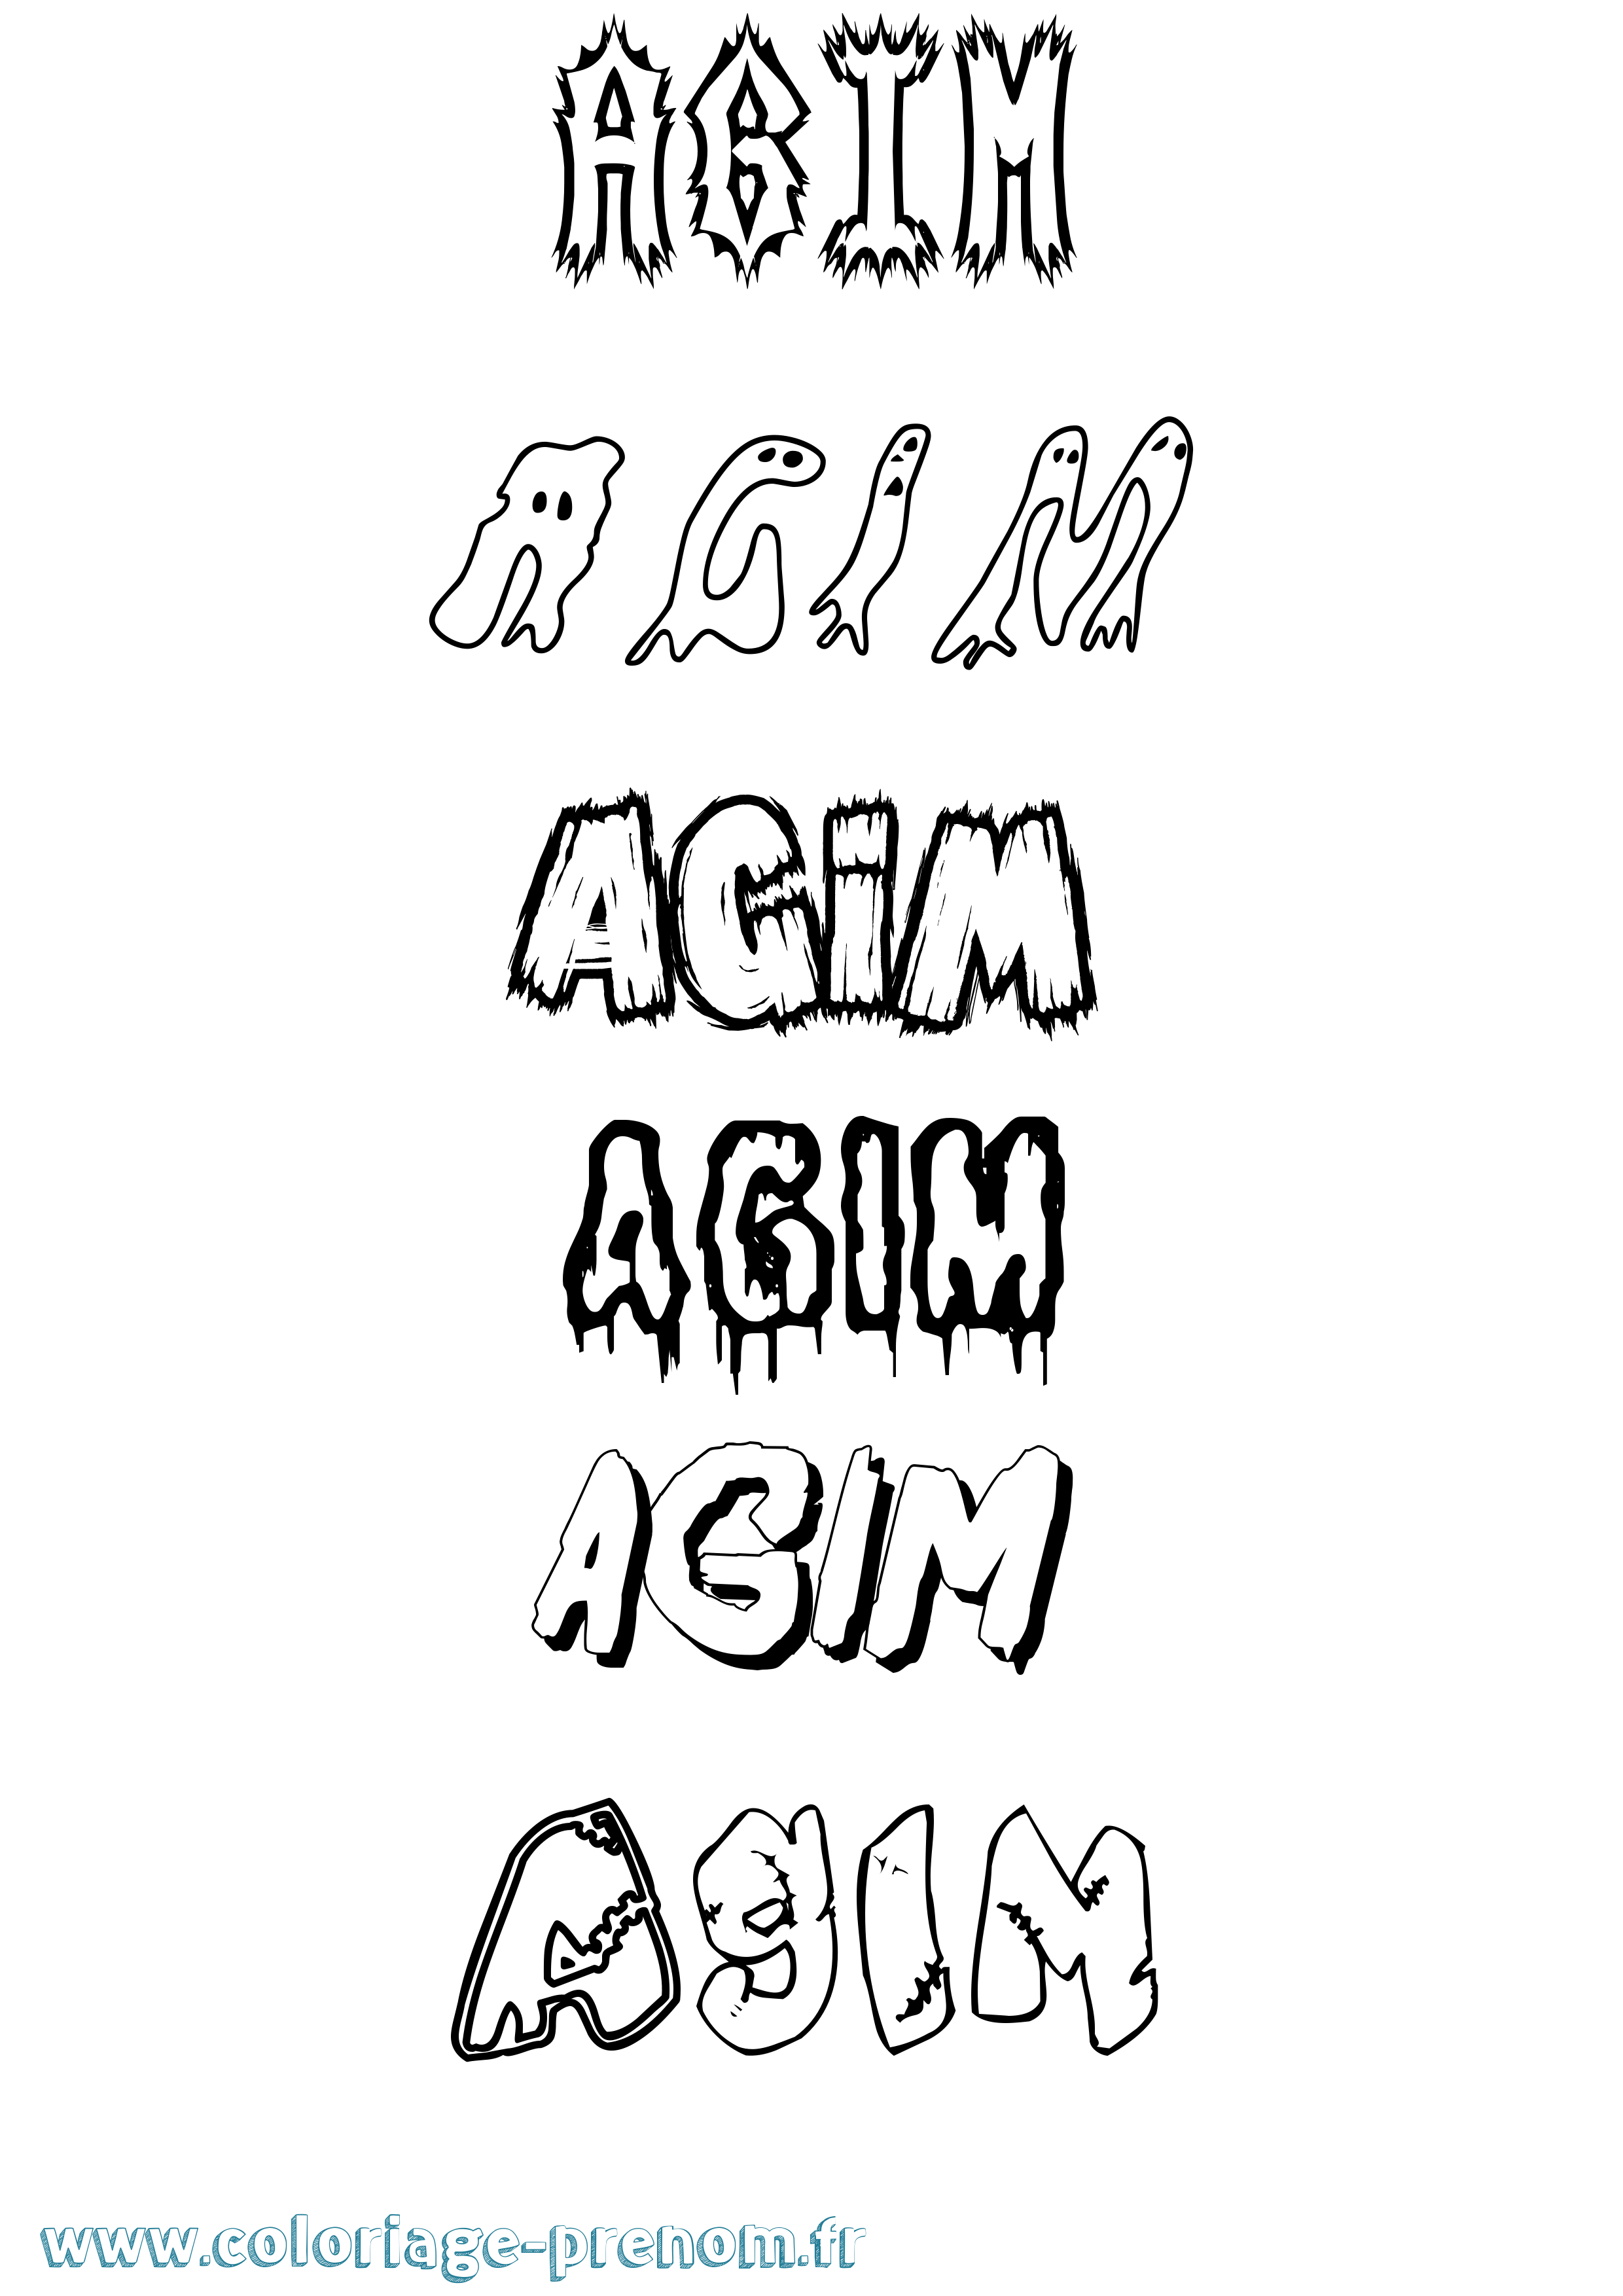 Coloriage prénom Agim Frisson